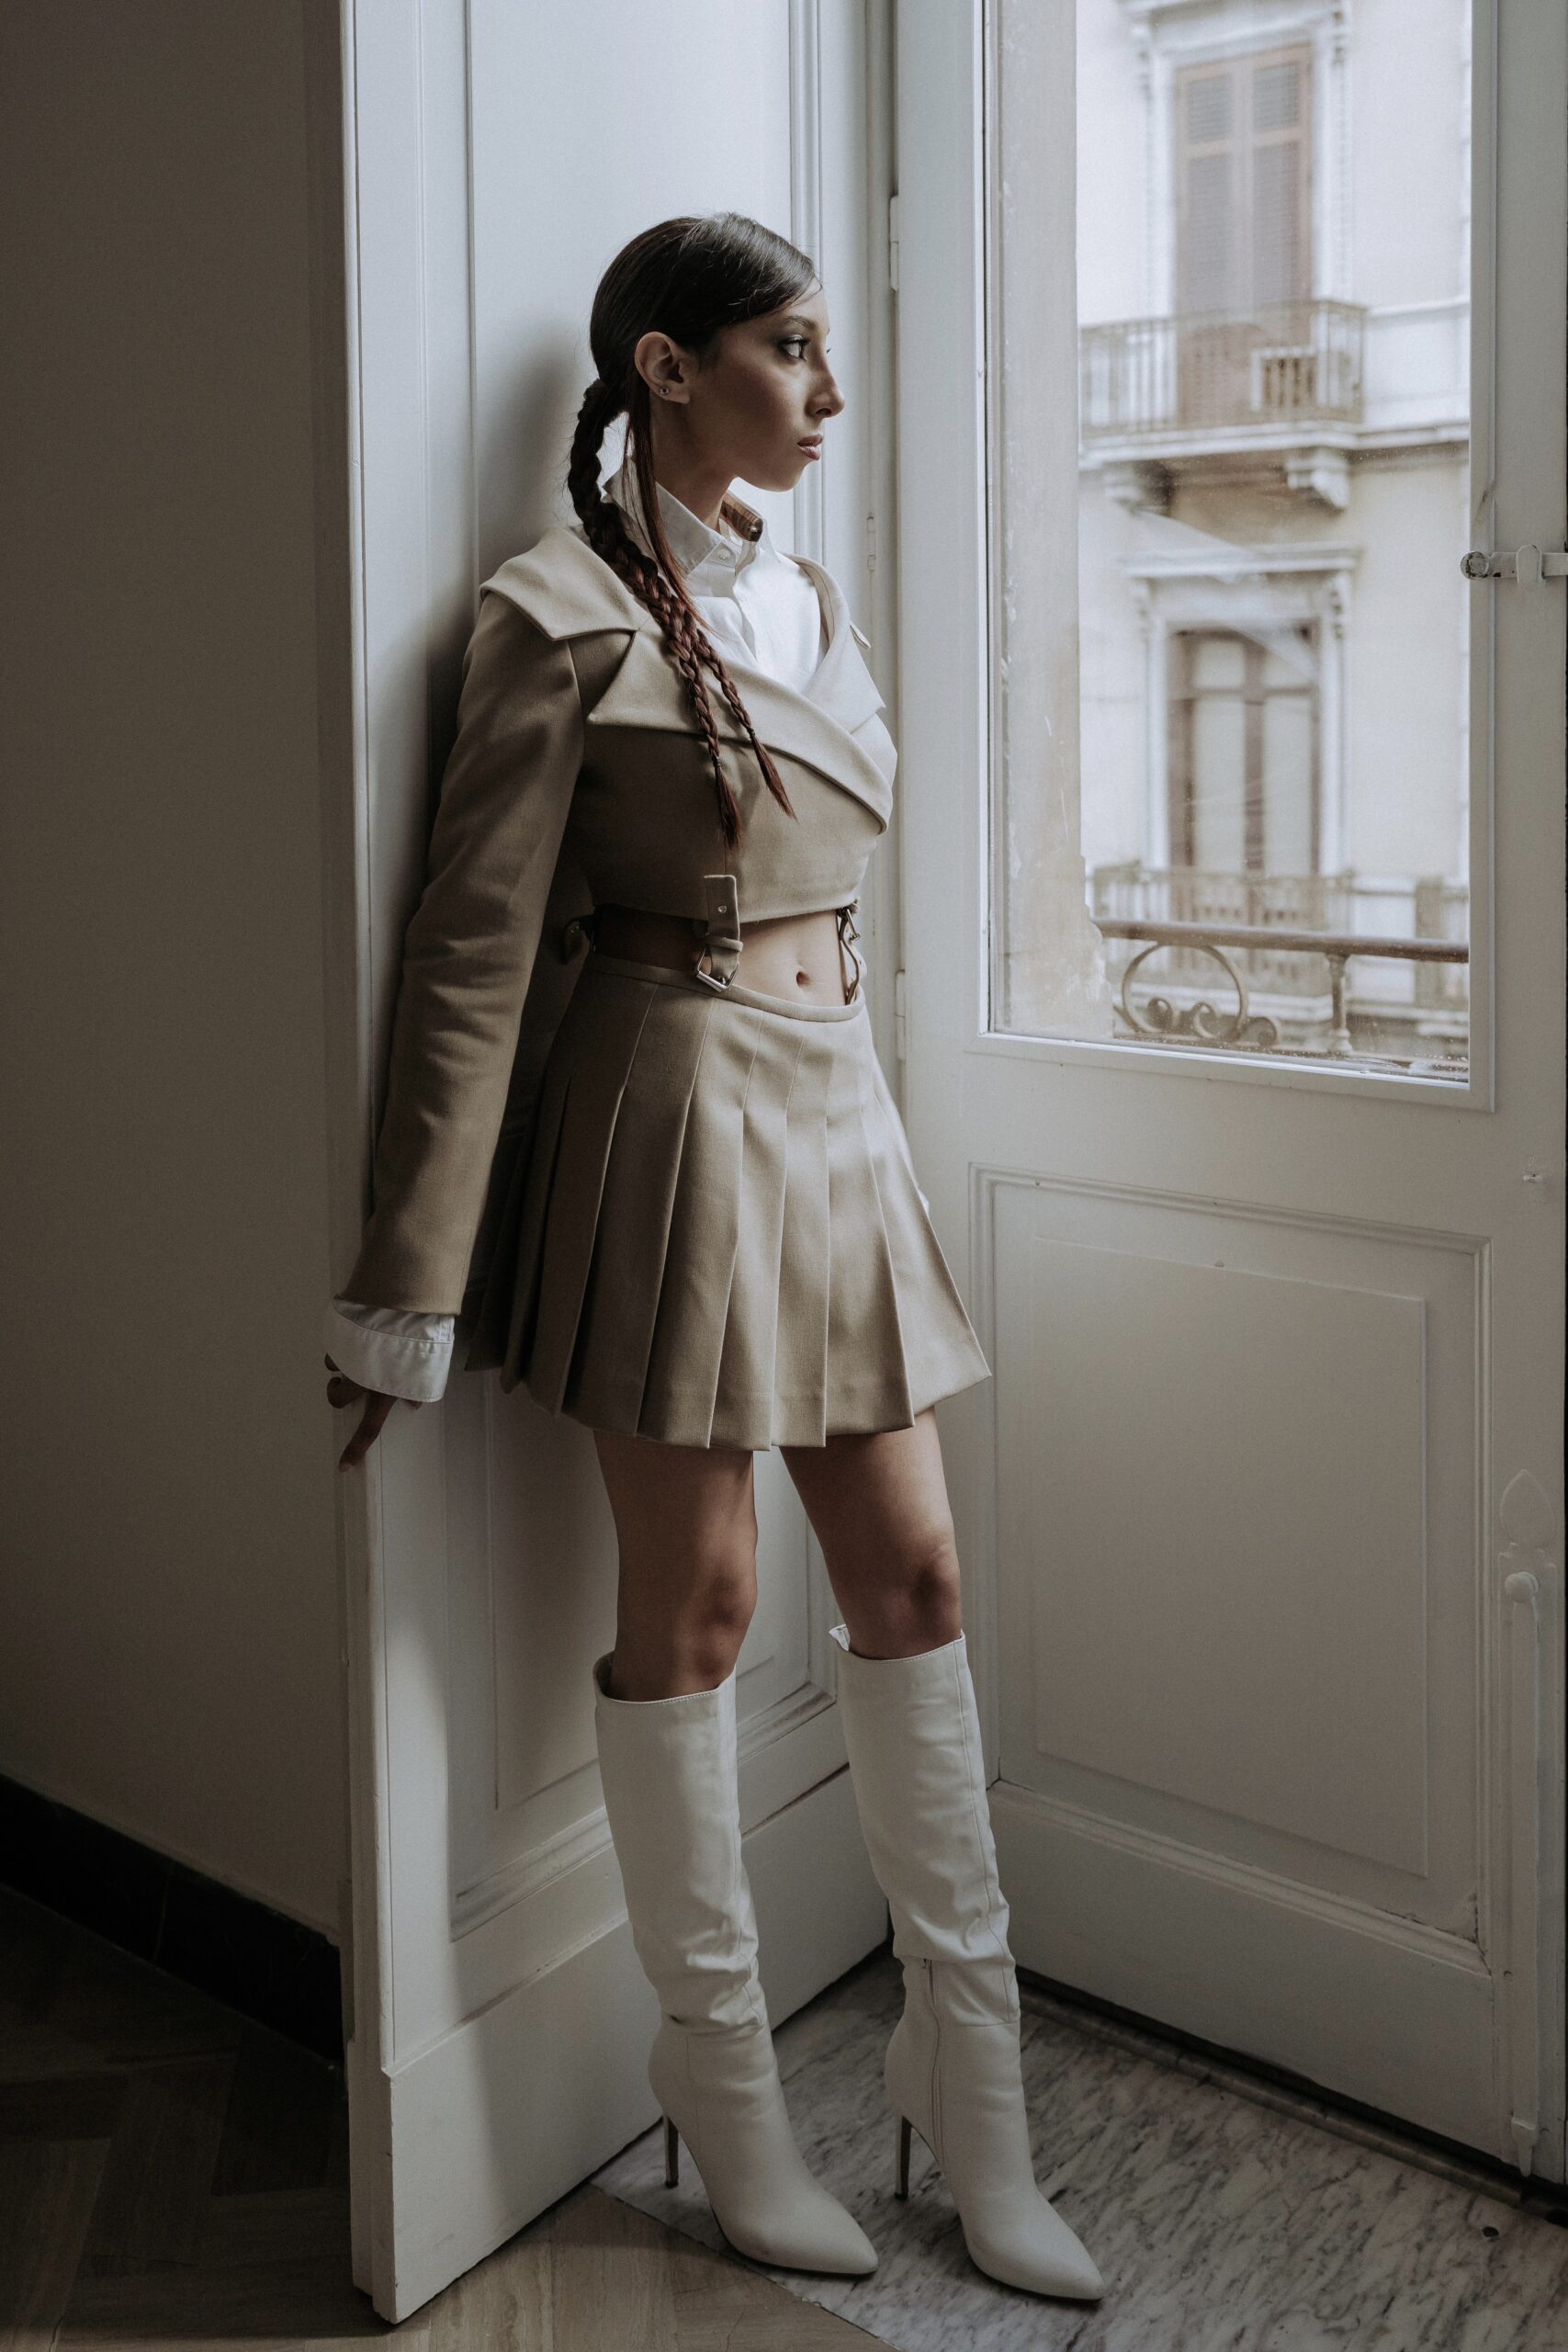 Modella indossa un completo a fibie LegameBrand, composto da blazer e minigonna, mentre guarda attraverso una finestra con determinazione e stile.